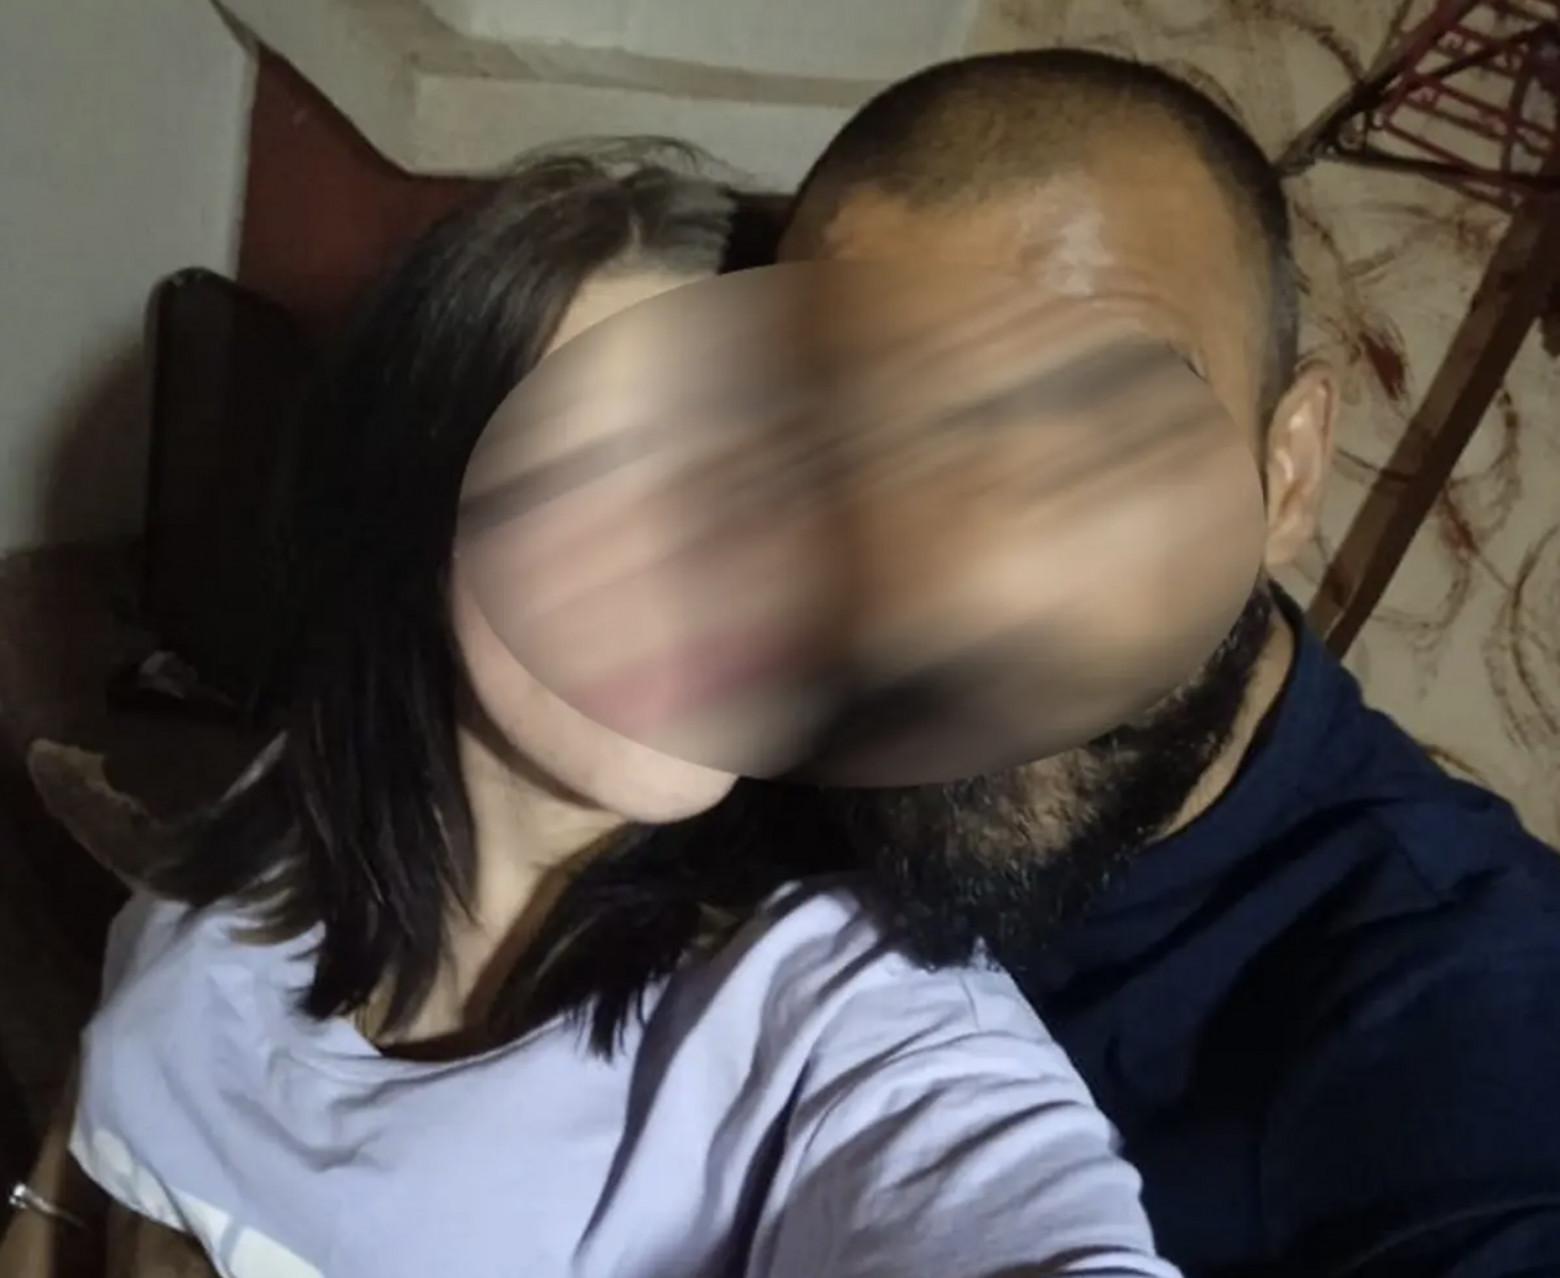 Λάρισα: Σοκ με τη δολοφονία της 35χρονης - Οι αρχές αναζητούν τον σύντροφο της